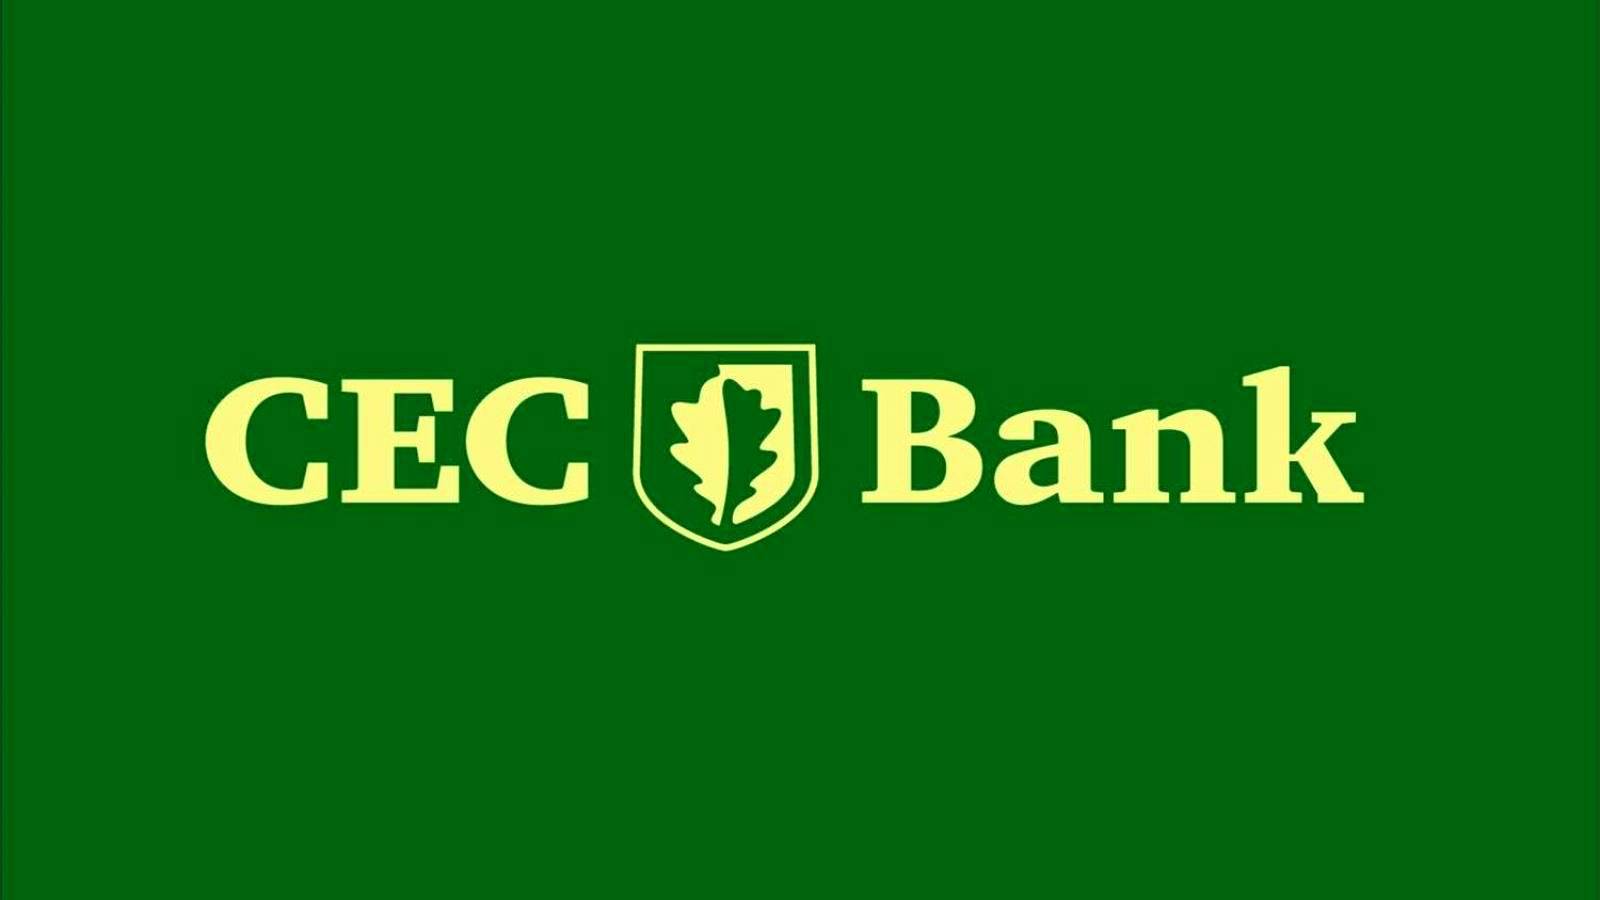 DRINGENDE Ankündigung der CEC Bank, die Kunden jetzt wissen müssen